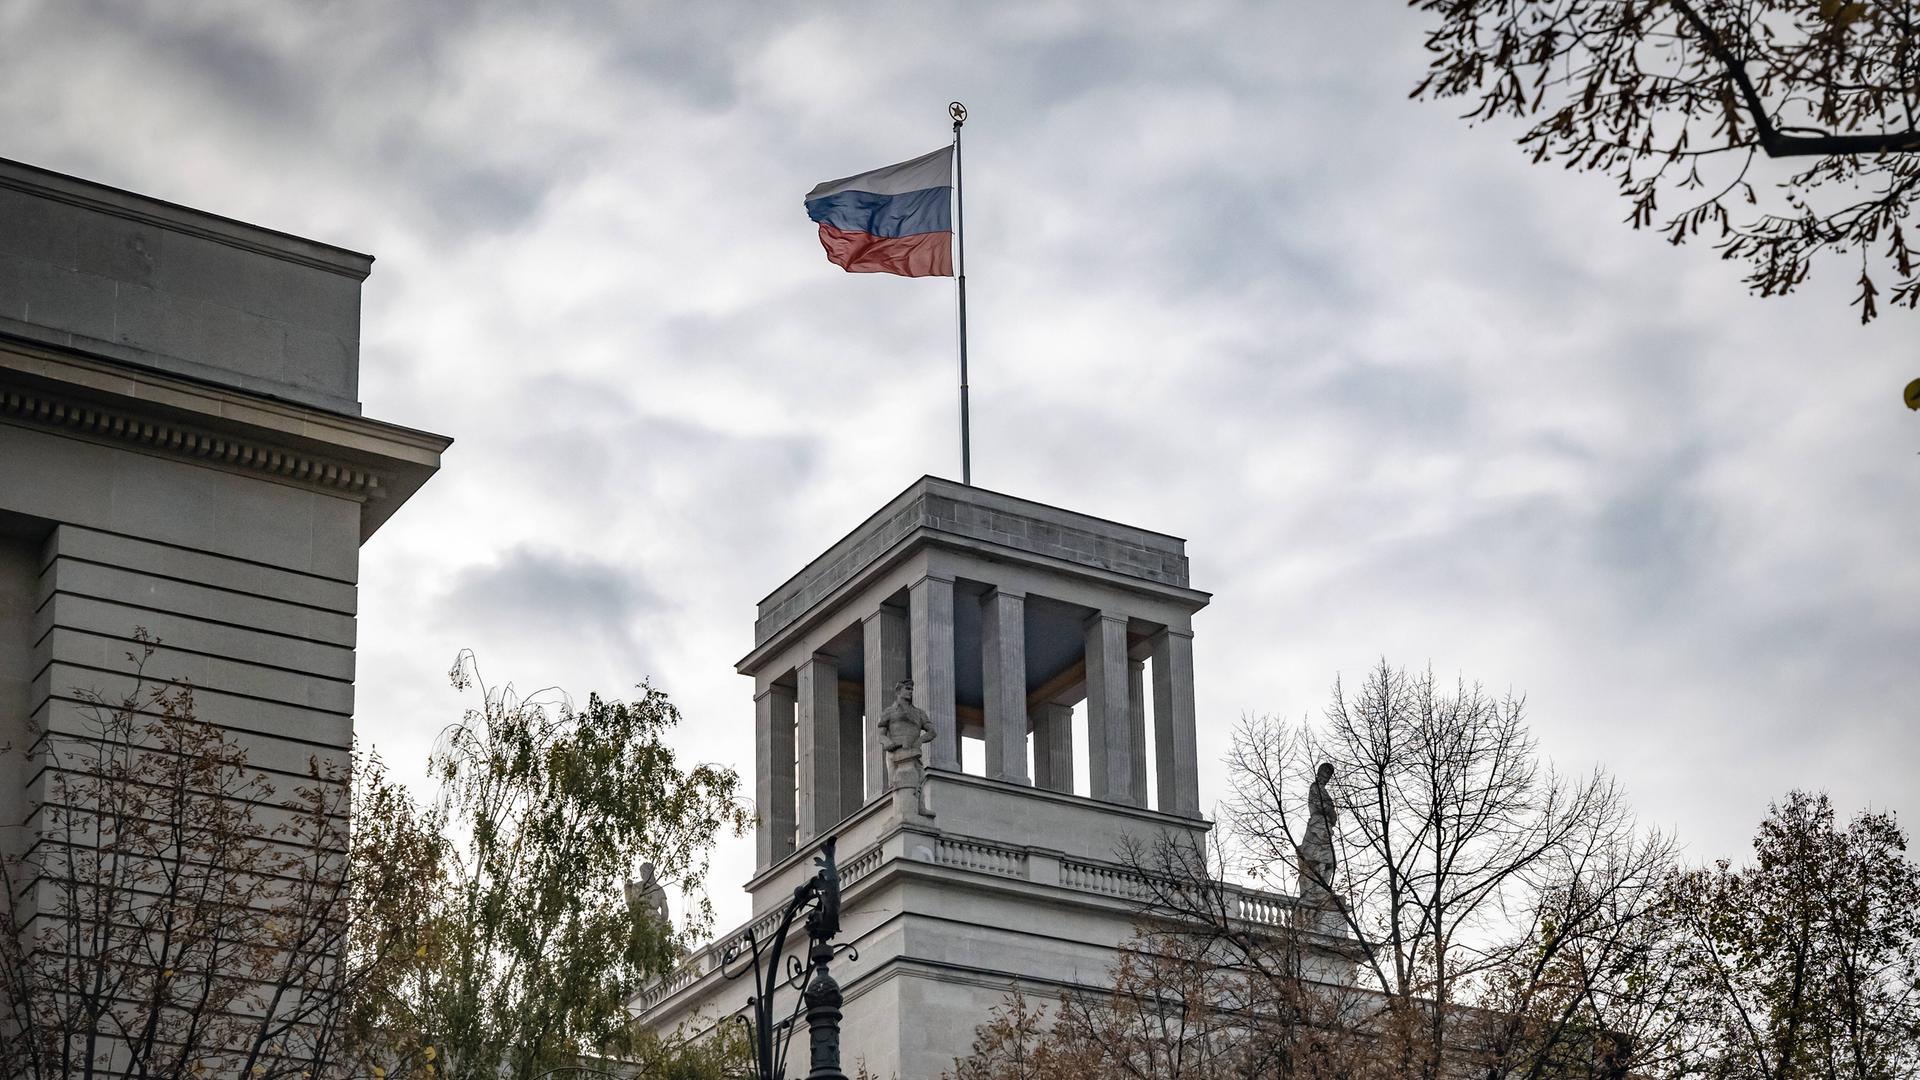 Zu sehen ist ein Turm der Russischen Botschaft in Berlin mit der Fahne Russlands.